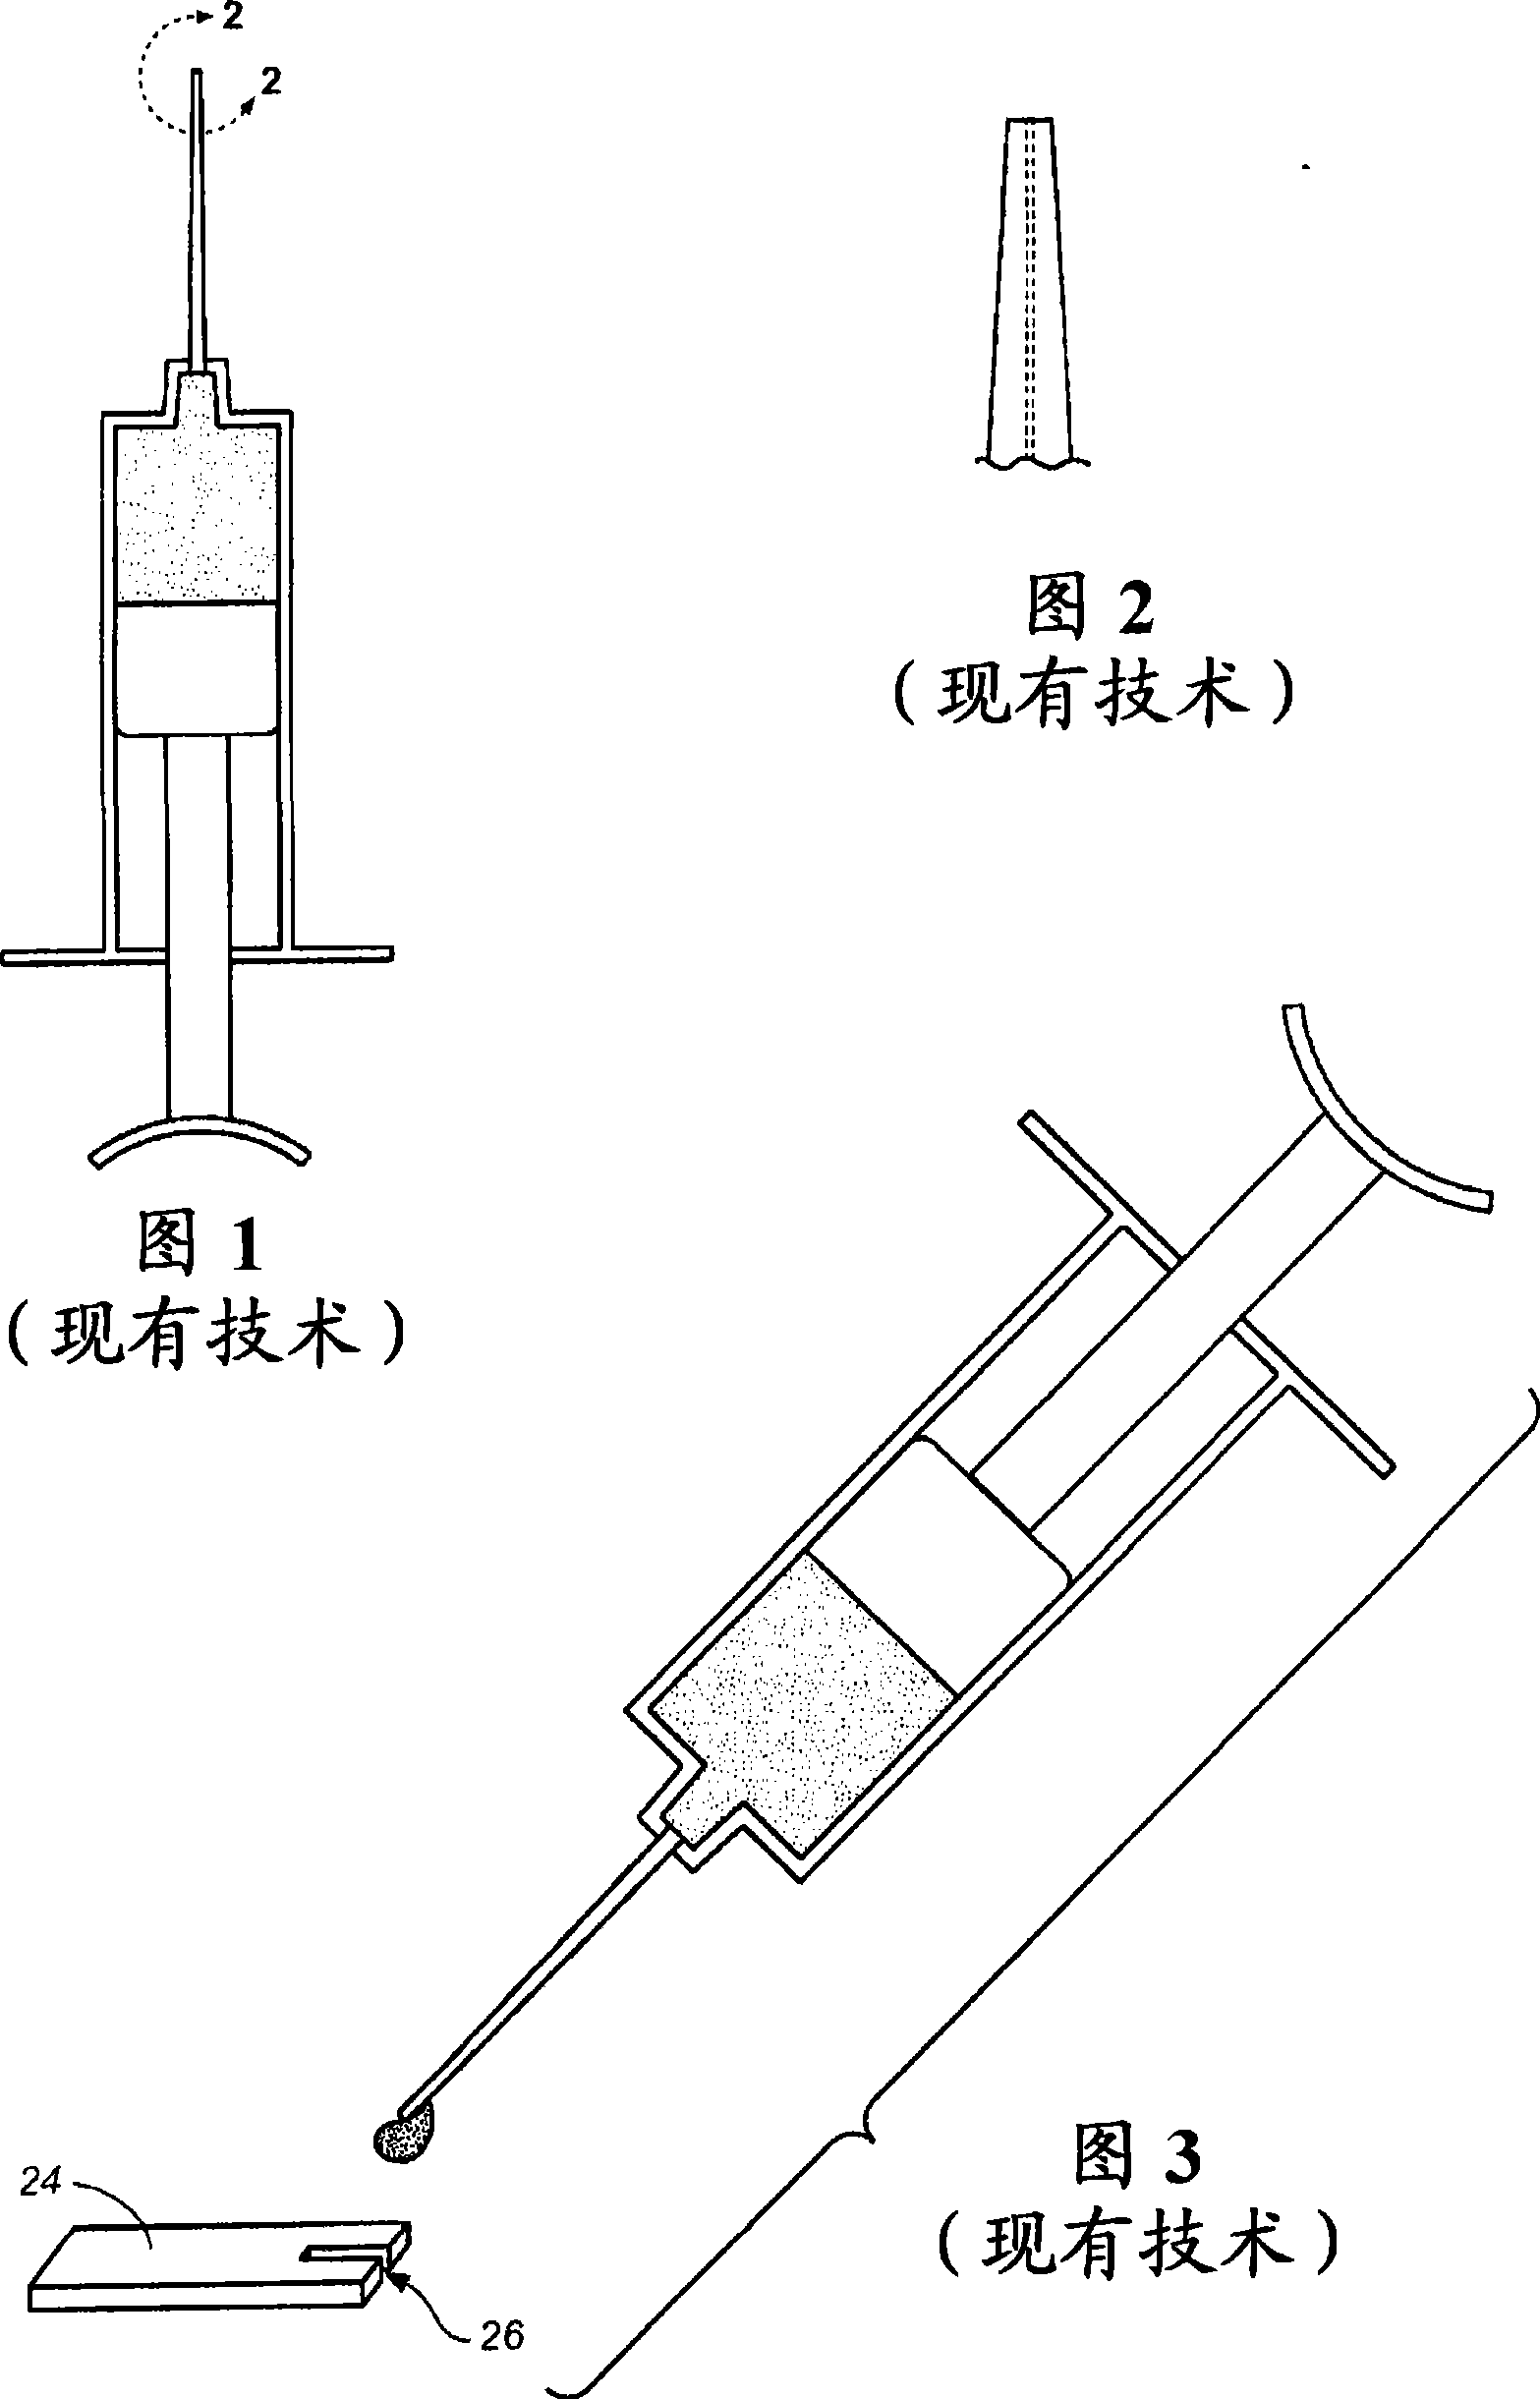 Syringe adapter